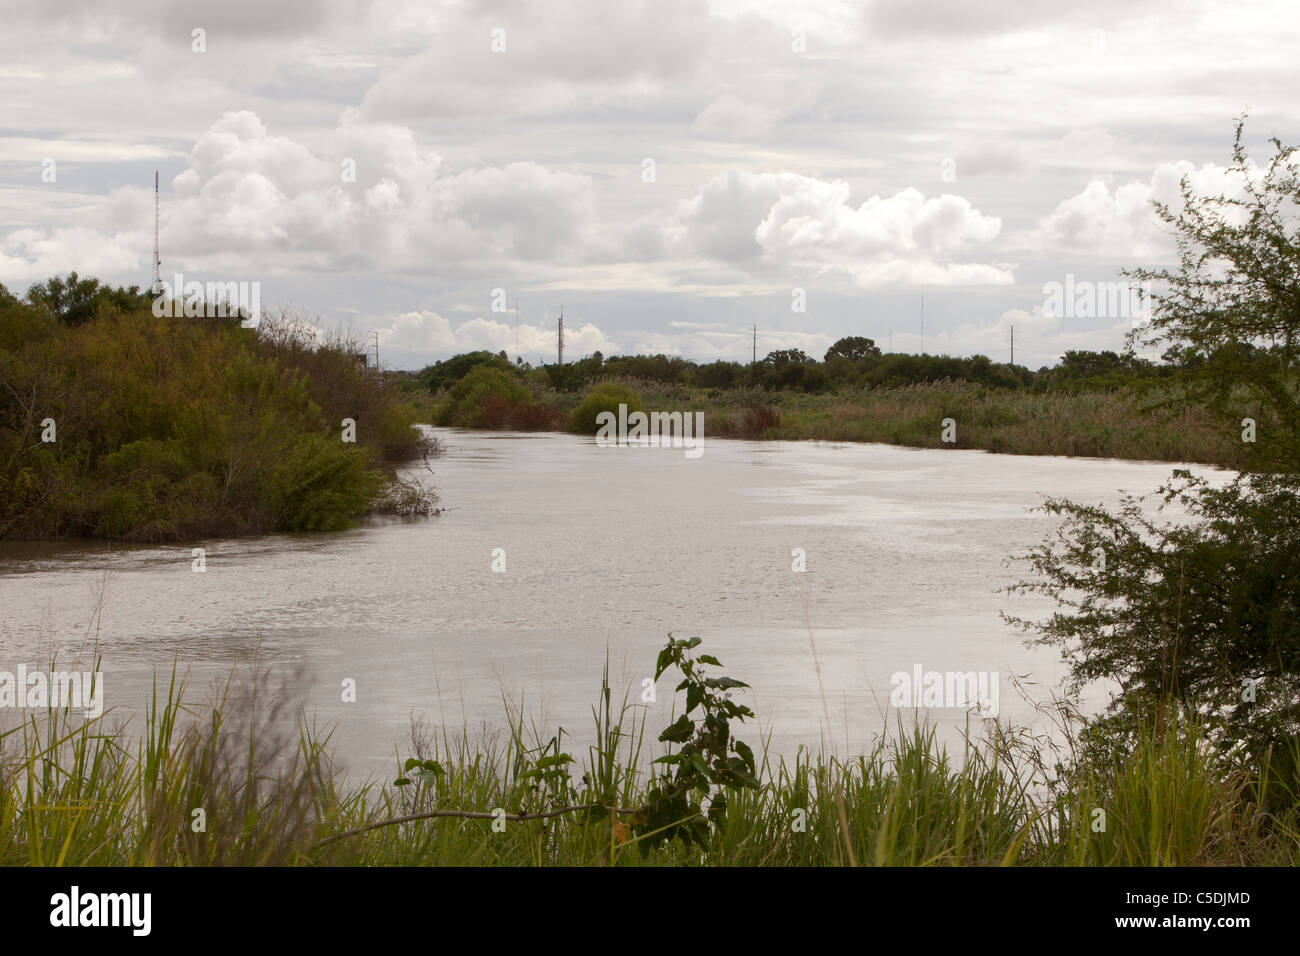 Bereich des Flusses Rio Grande in der Nähe von Brownsville, Texas am Texas Vereinigte Staaten Tamaulipas - mexikanischen Grenze Stockfoto